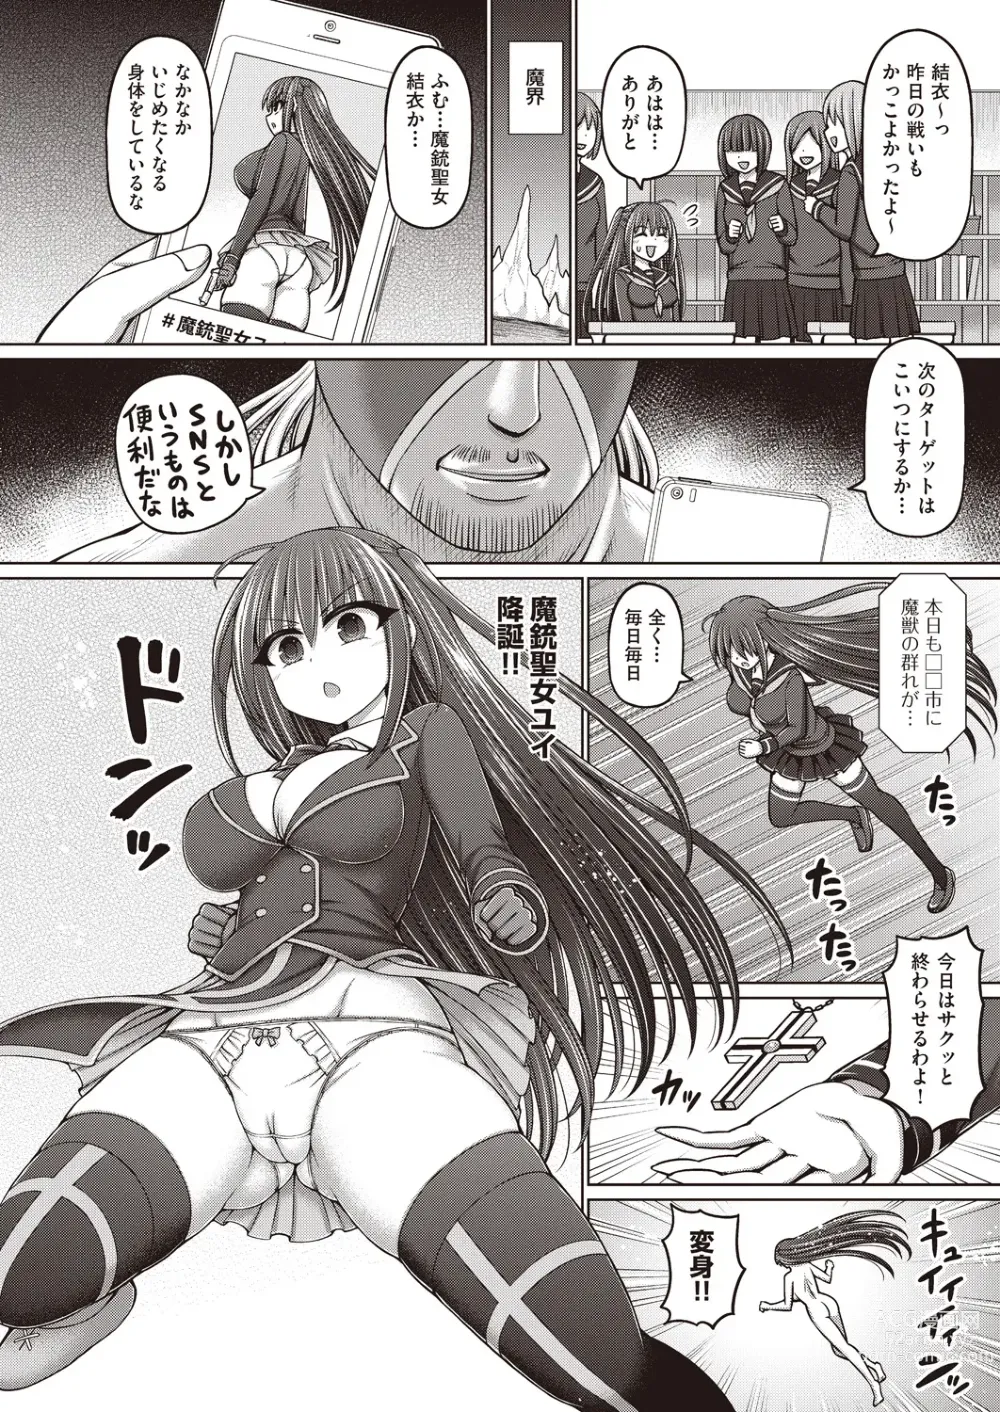 Page 4 of manga Majuu Seijo Yui vs Puroresu Majin Zenpen